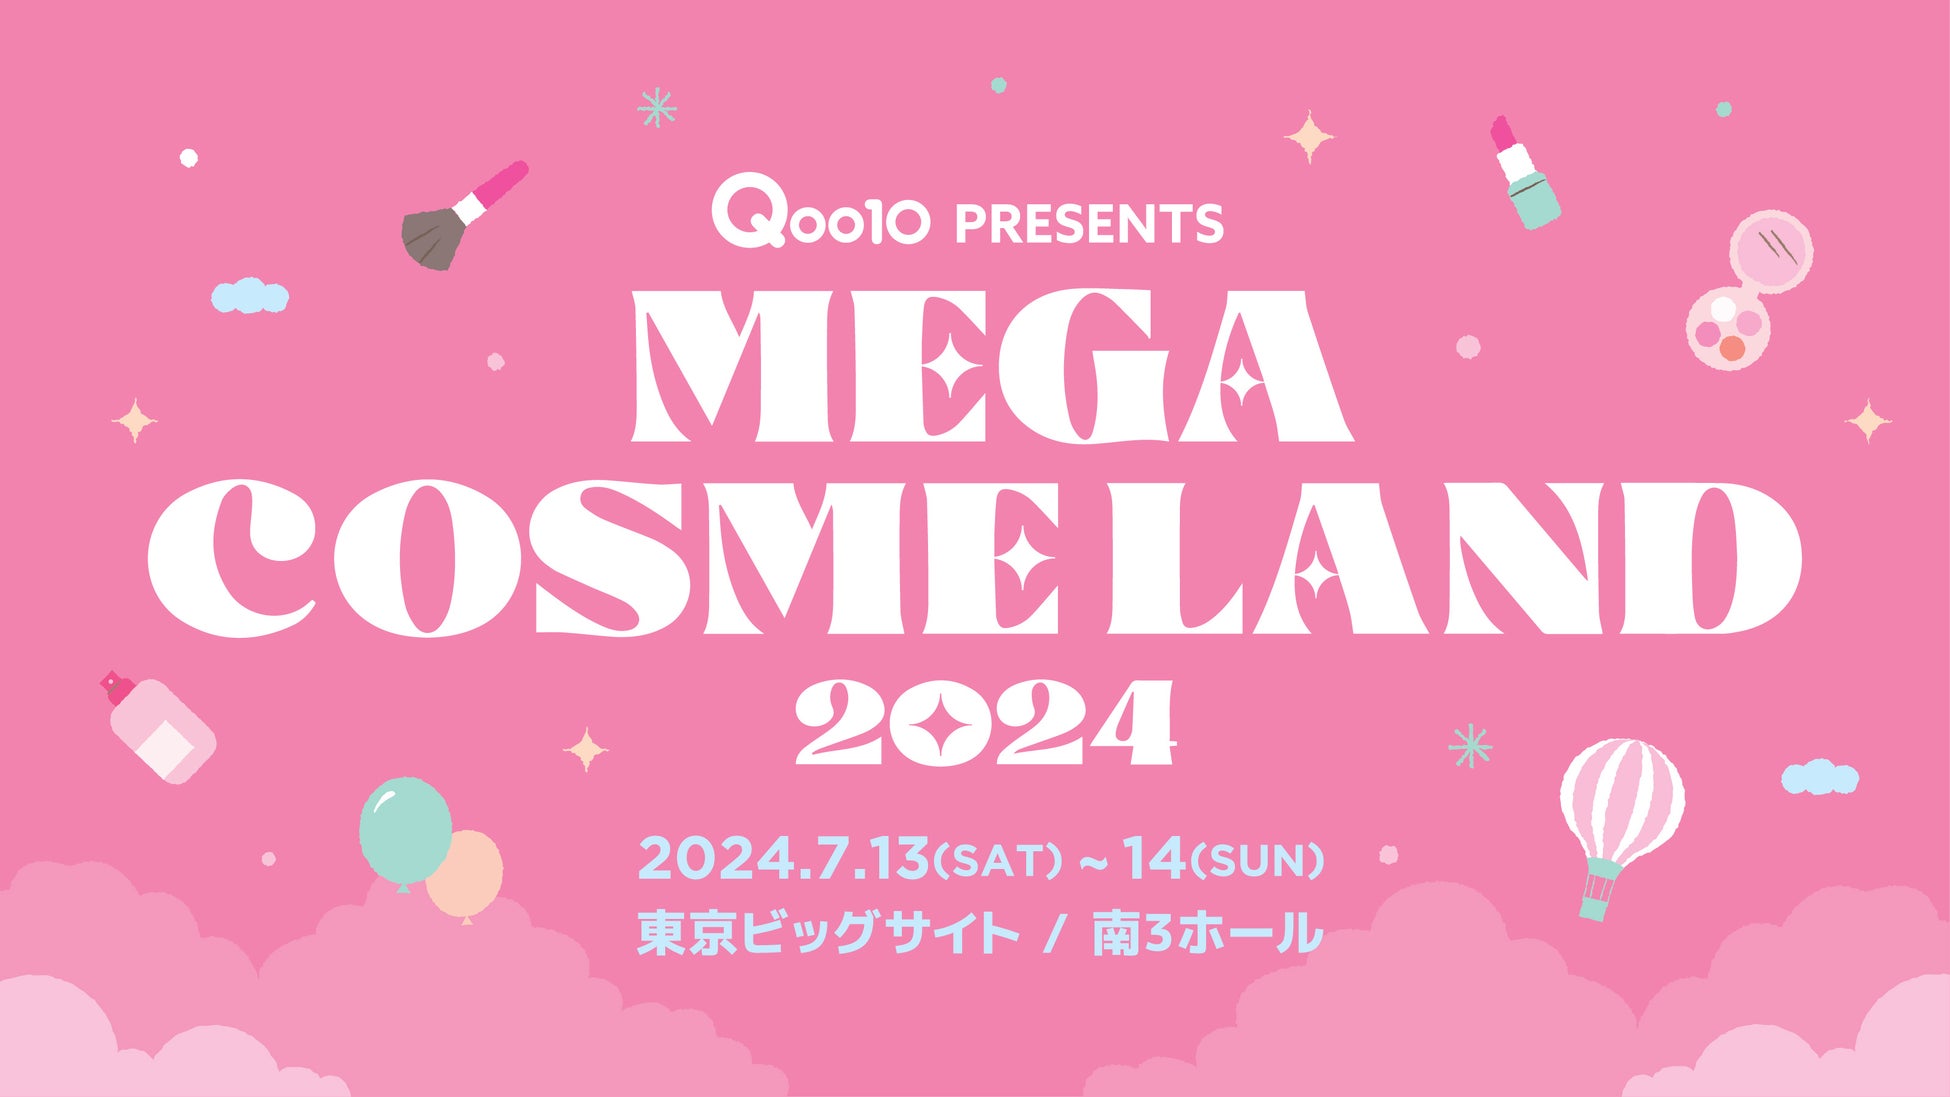 【INNISFREE】Qoo10初のオフラインイベント「MEGA COSME LAND 2024」に参加決定！